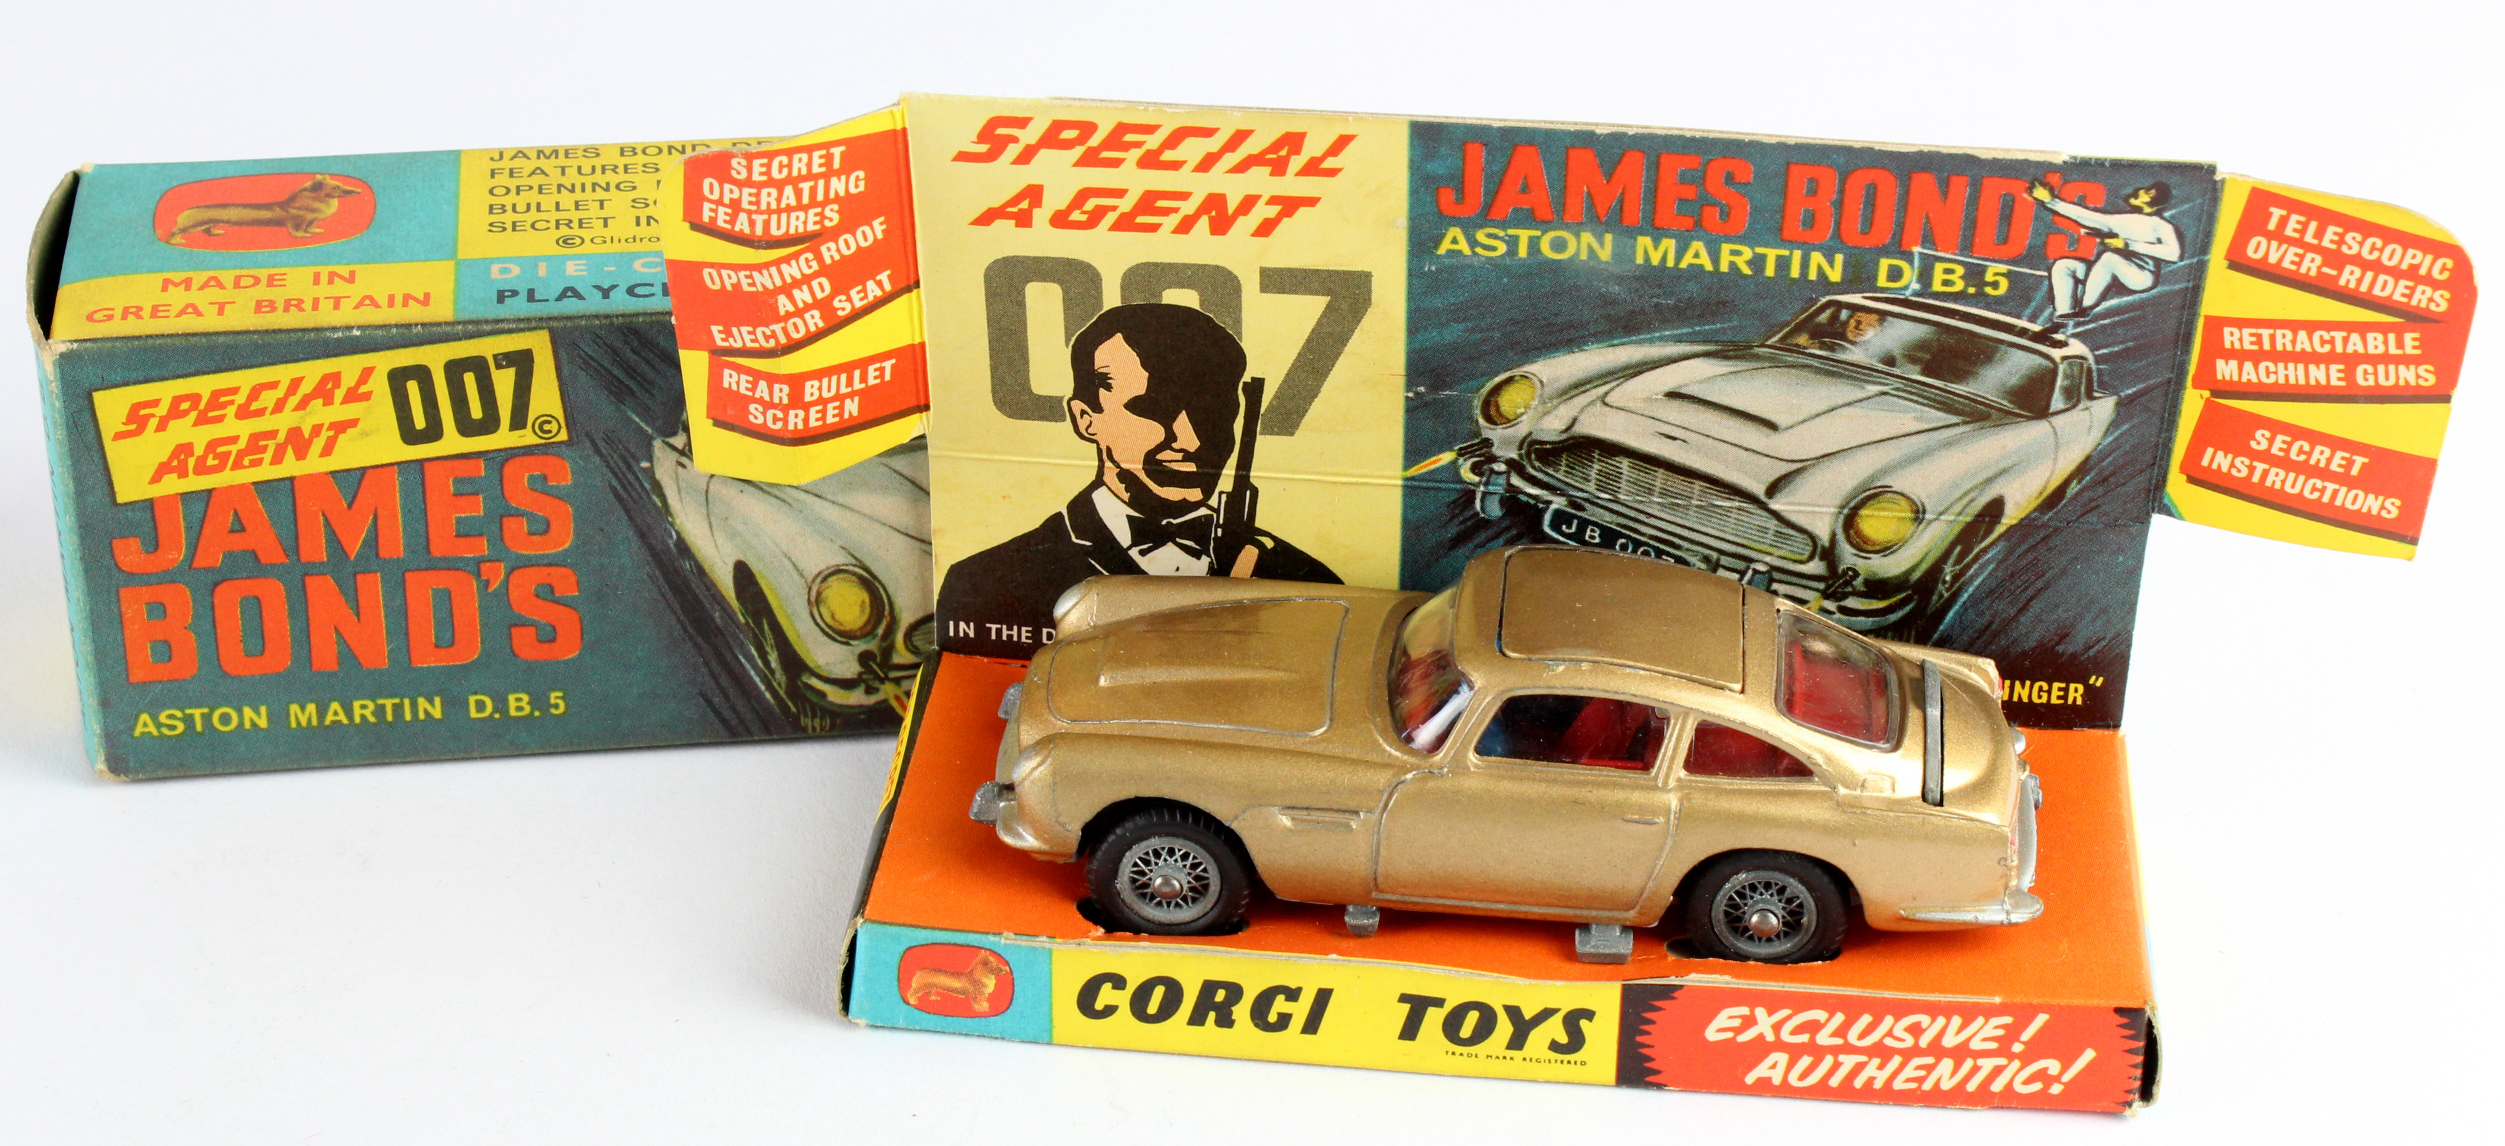 Corgi Toys, no. 261 'Special Agent 007 James Bonds Aston Martin D.B.5', with original insert, two